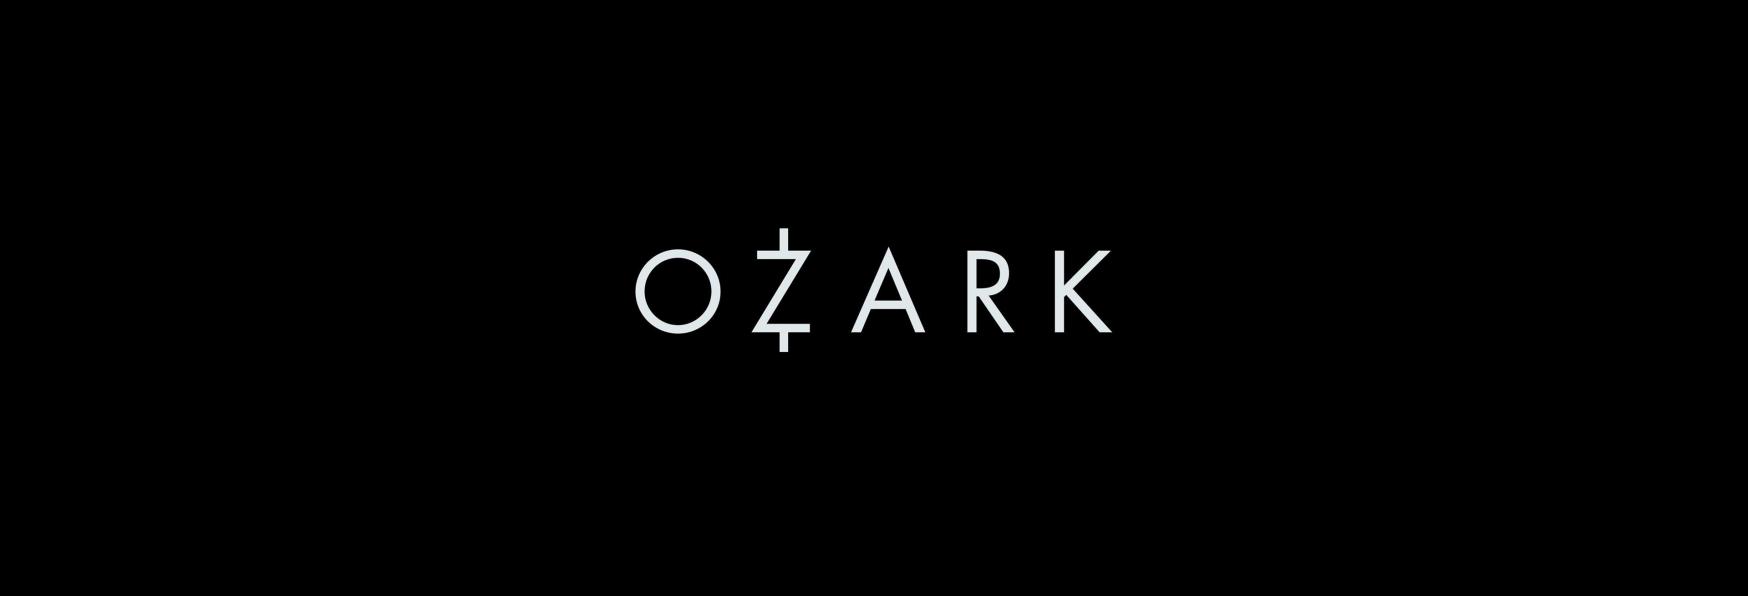 Ozark 4 Parte 2: il Trailer, il Poster e la Data di Uscita degli Ultimi Episodi della Serie TV